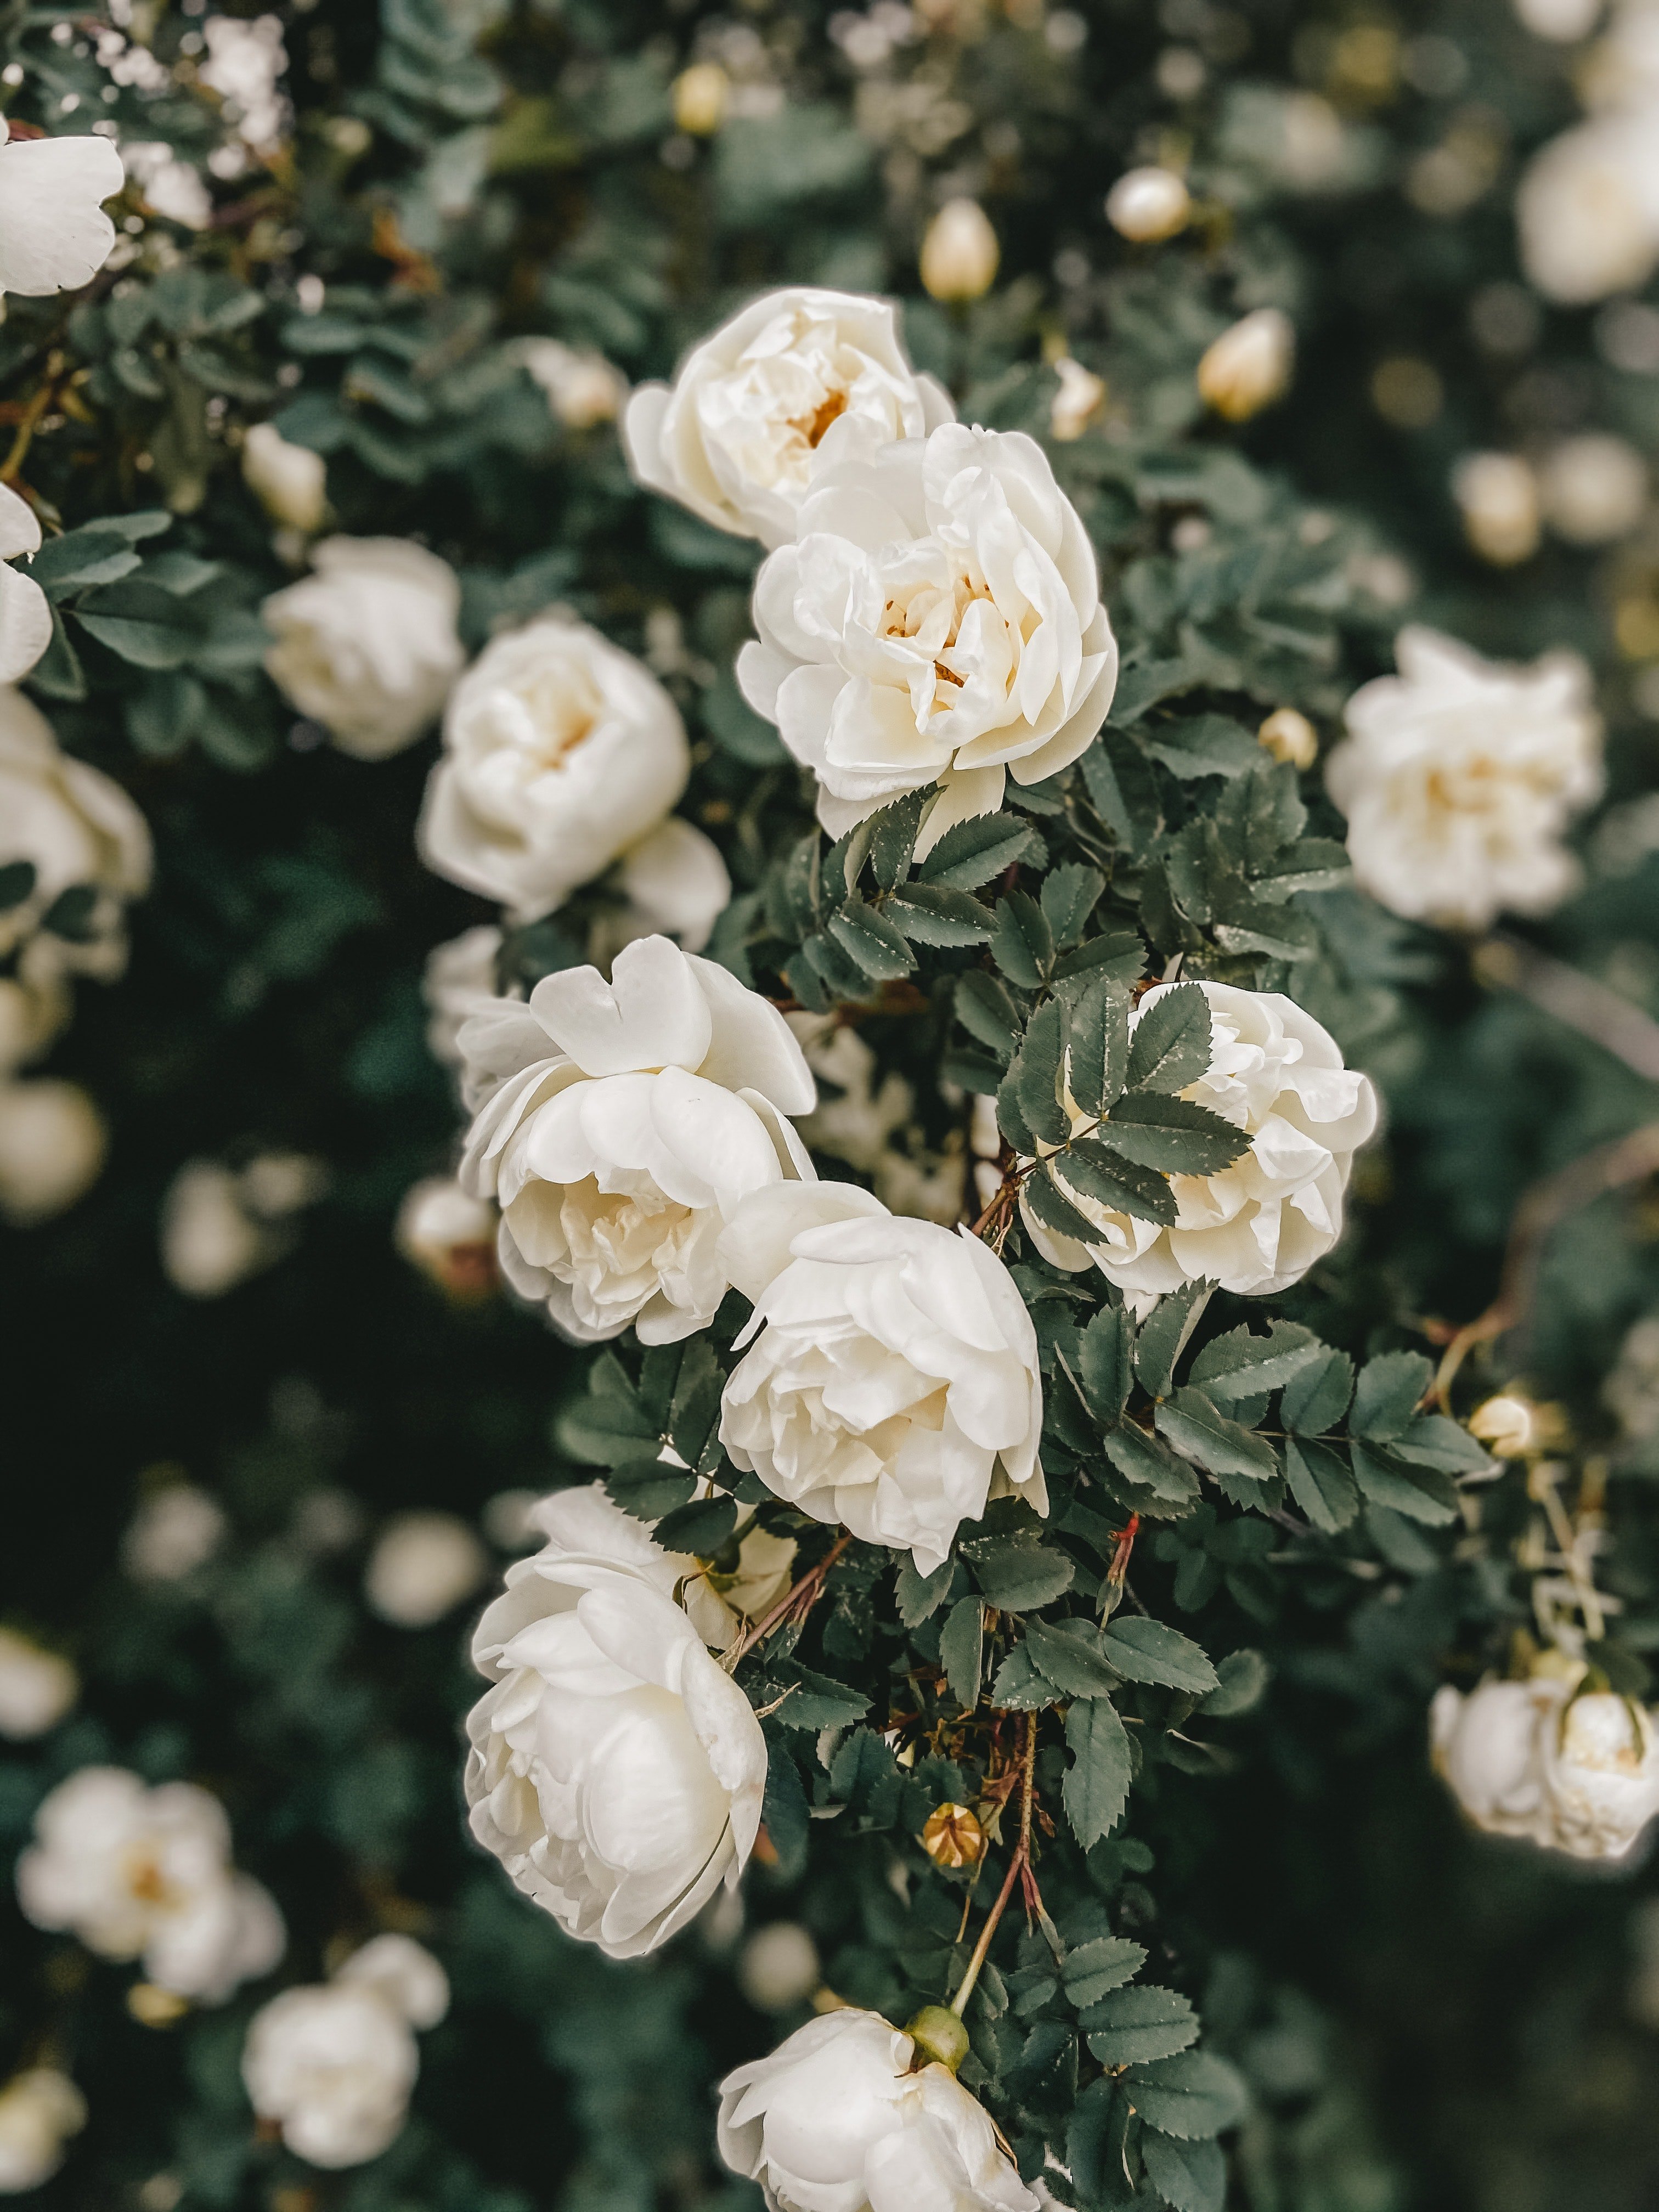 Annabel pflanzte einen Rosenbusch für Margaret. | Quelle: Pexels